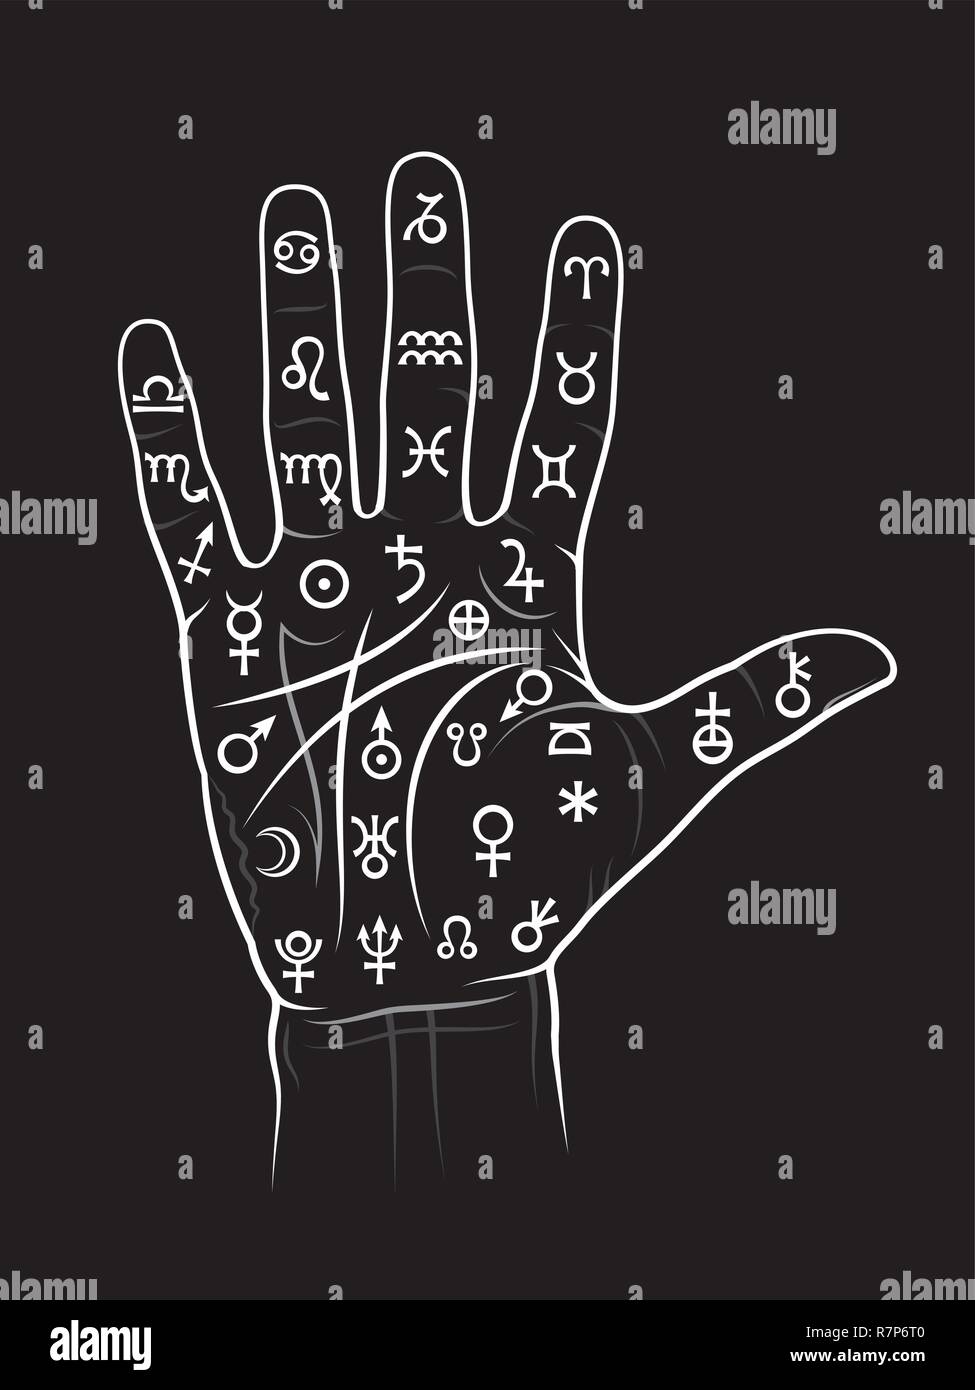 Die Kunst der schwarzen Magie: Chiromancy & Handlesen. Mystische Chart mit antiken Hieroglyphen, mittelalterliche Runen, astrologische Zeichen und alchemistische Symbole. Stock Vektor